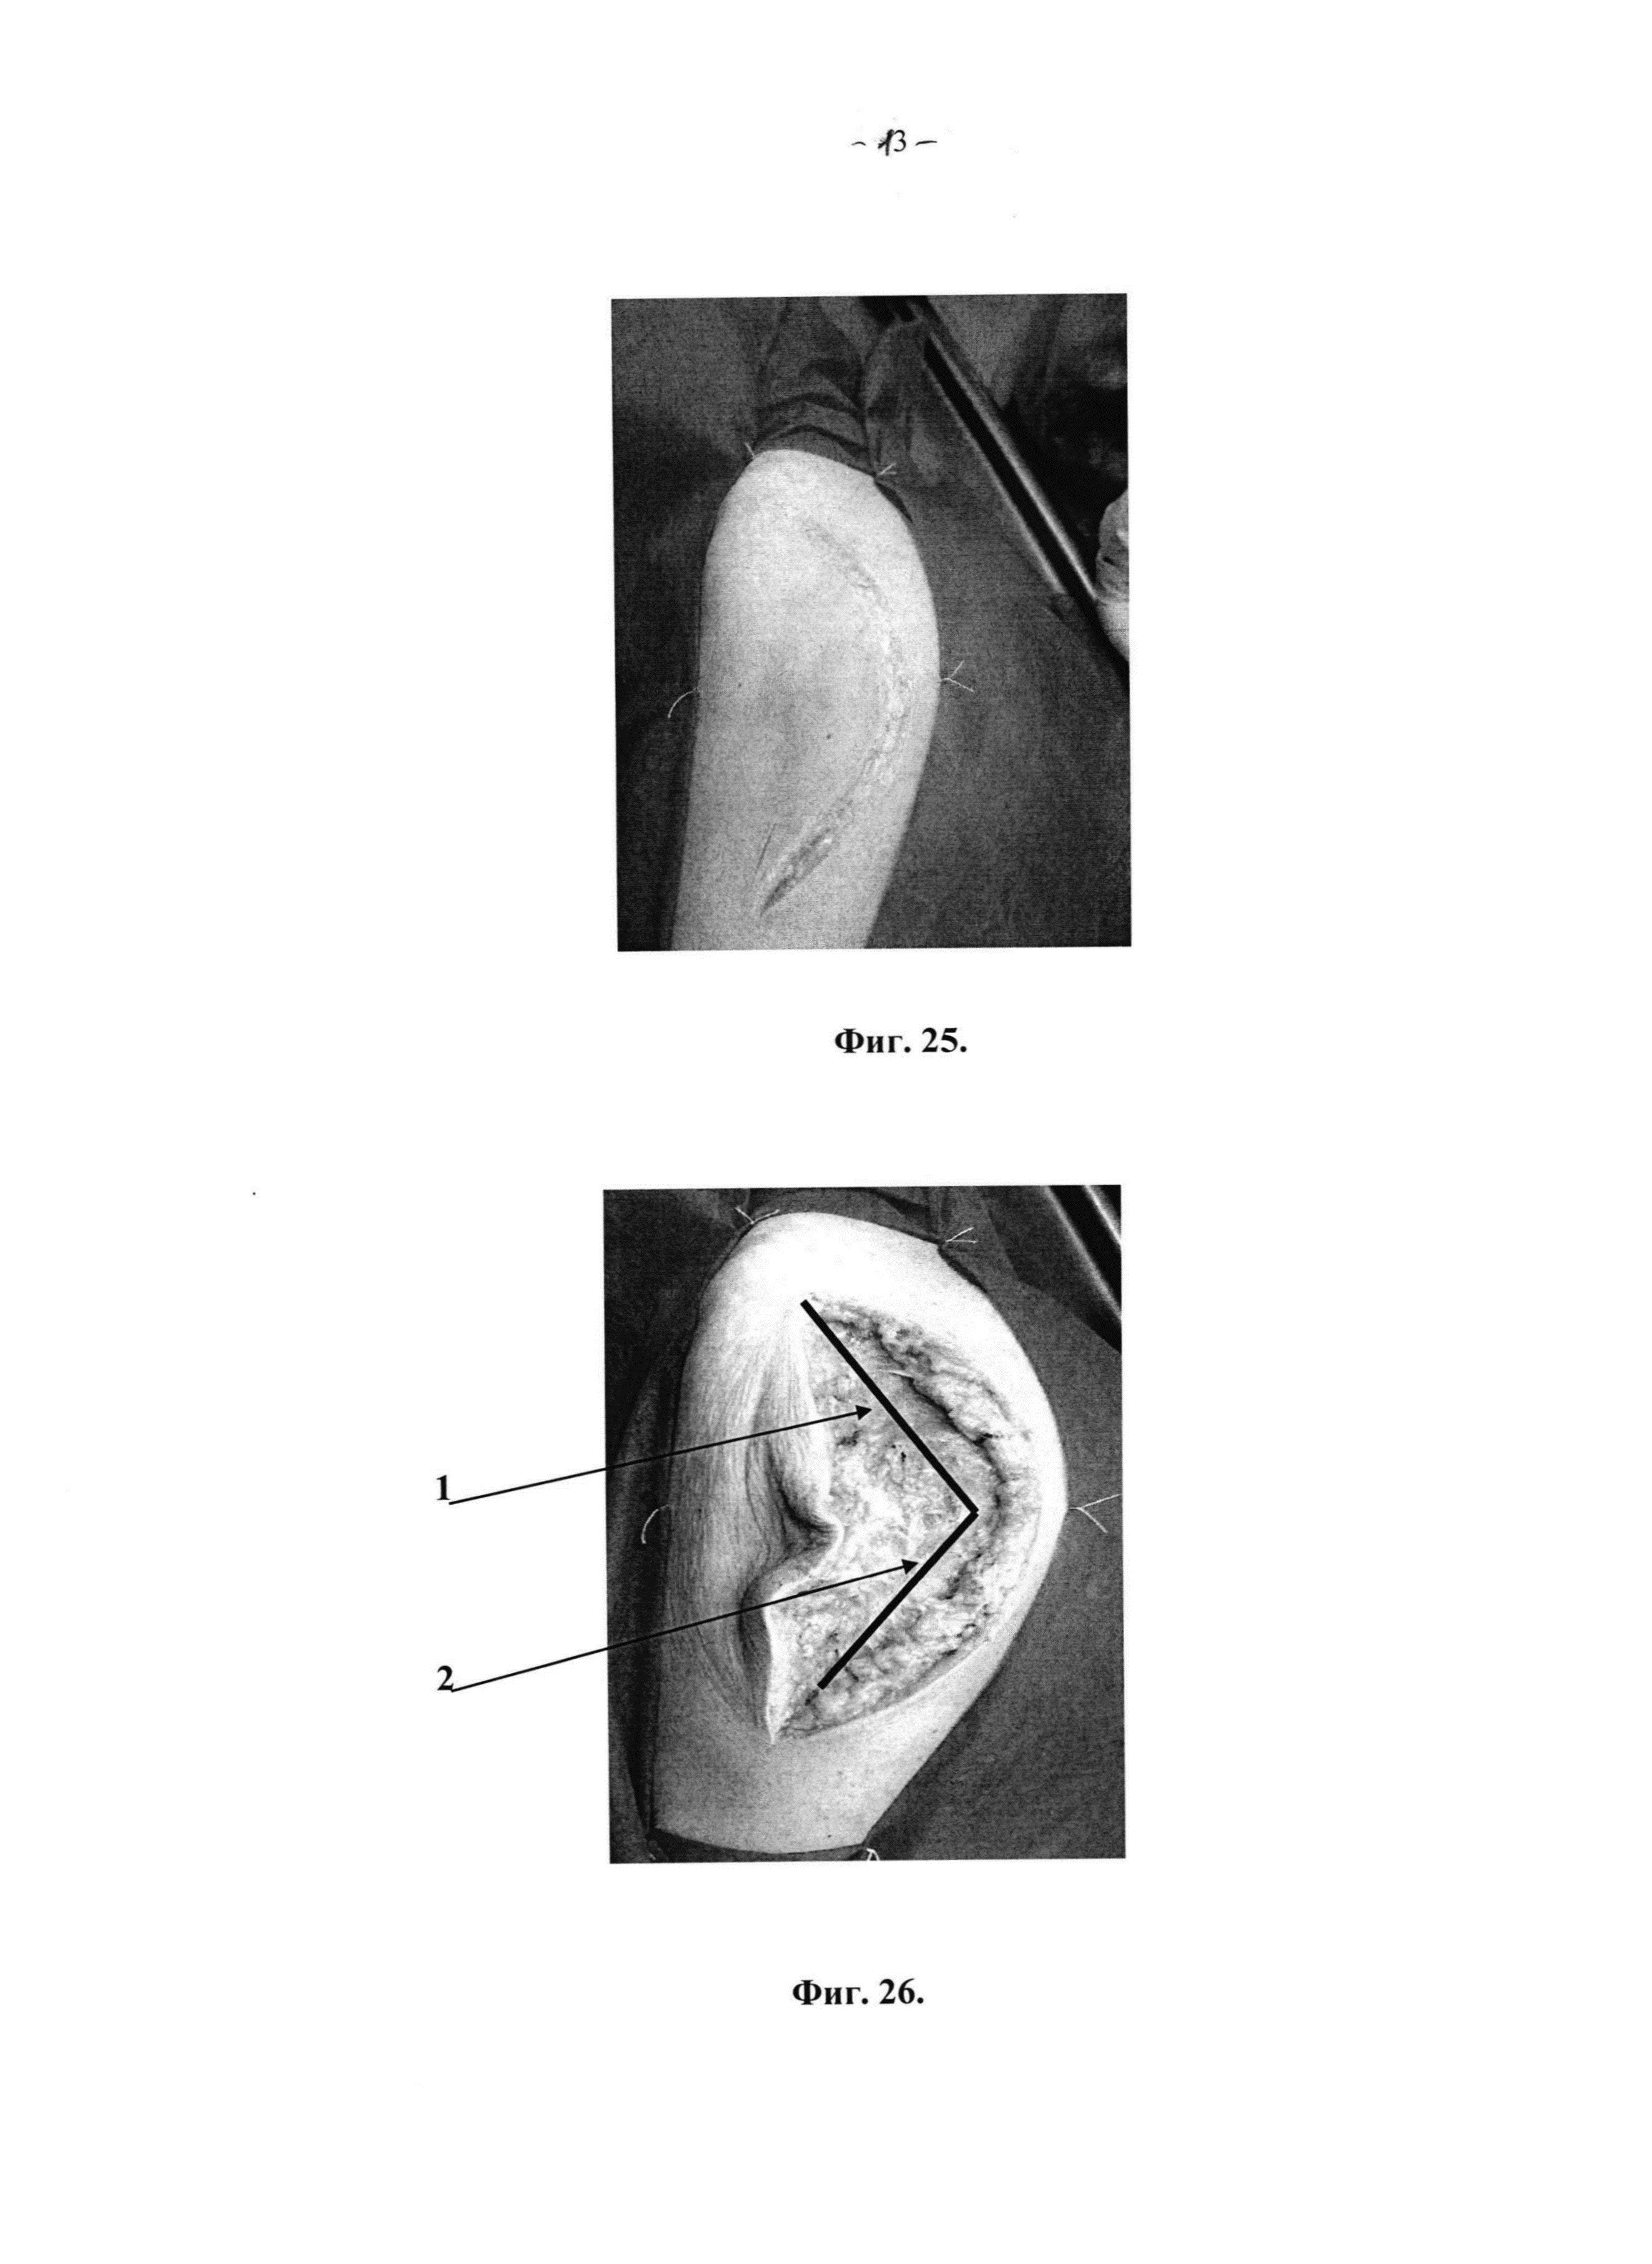 Способ экспериментального хирургического доступа к тазобедренному суставу при переломах вертлужной впадины